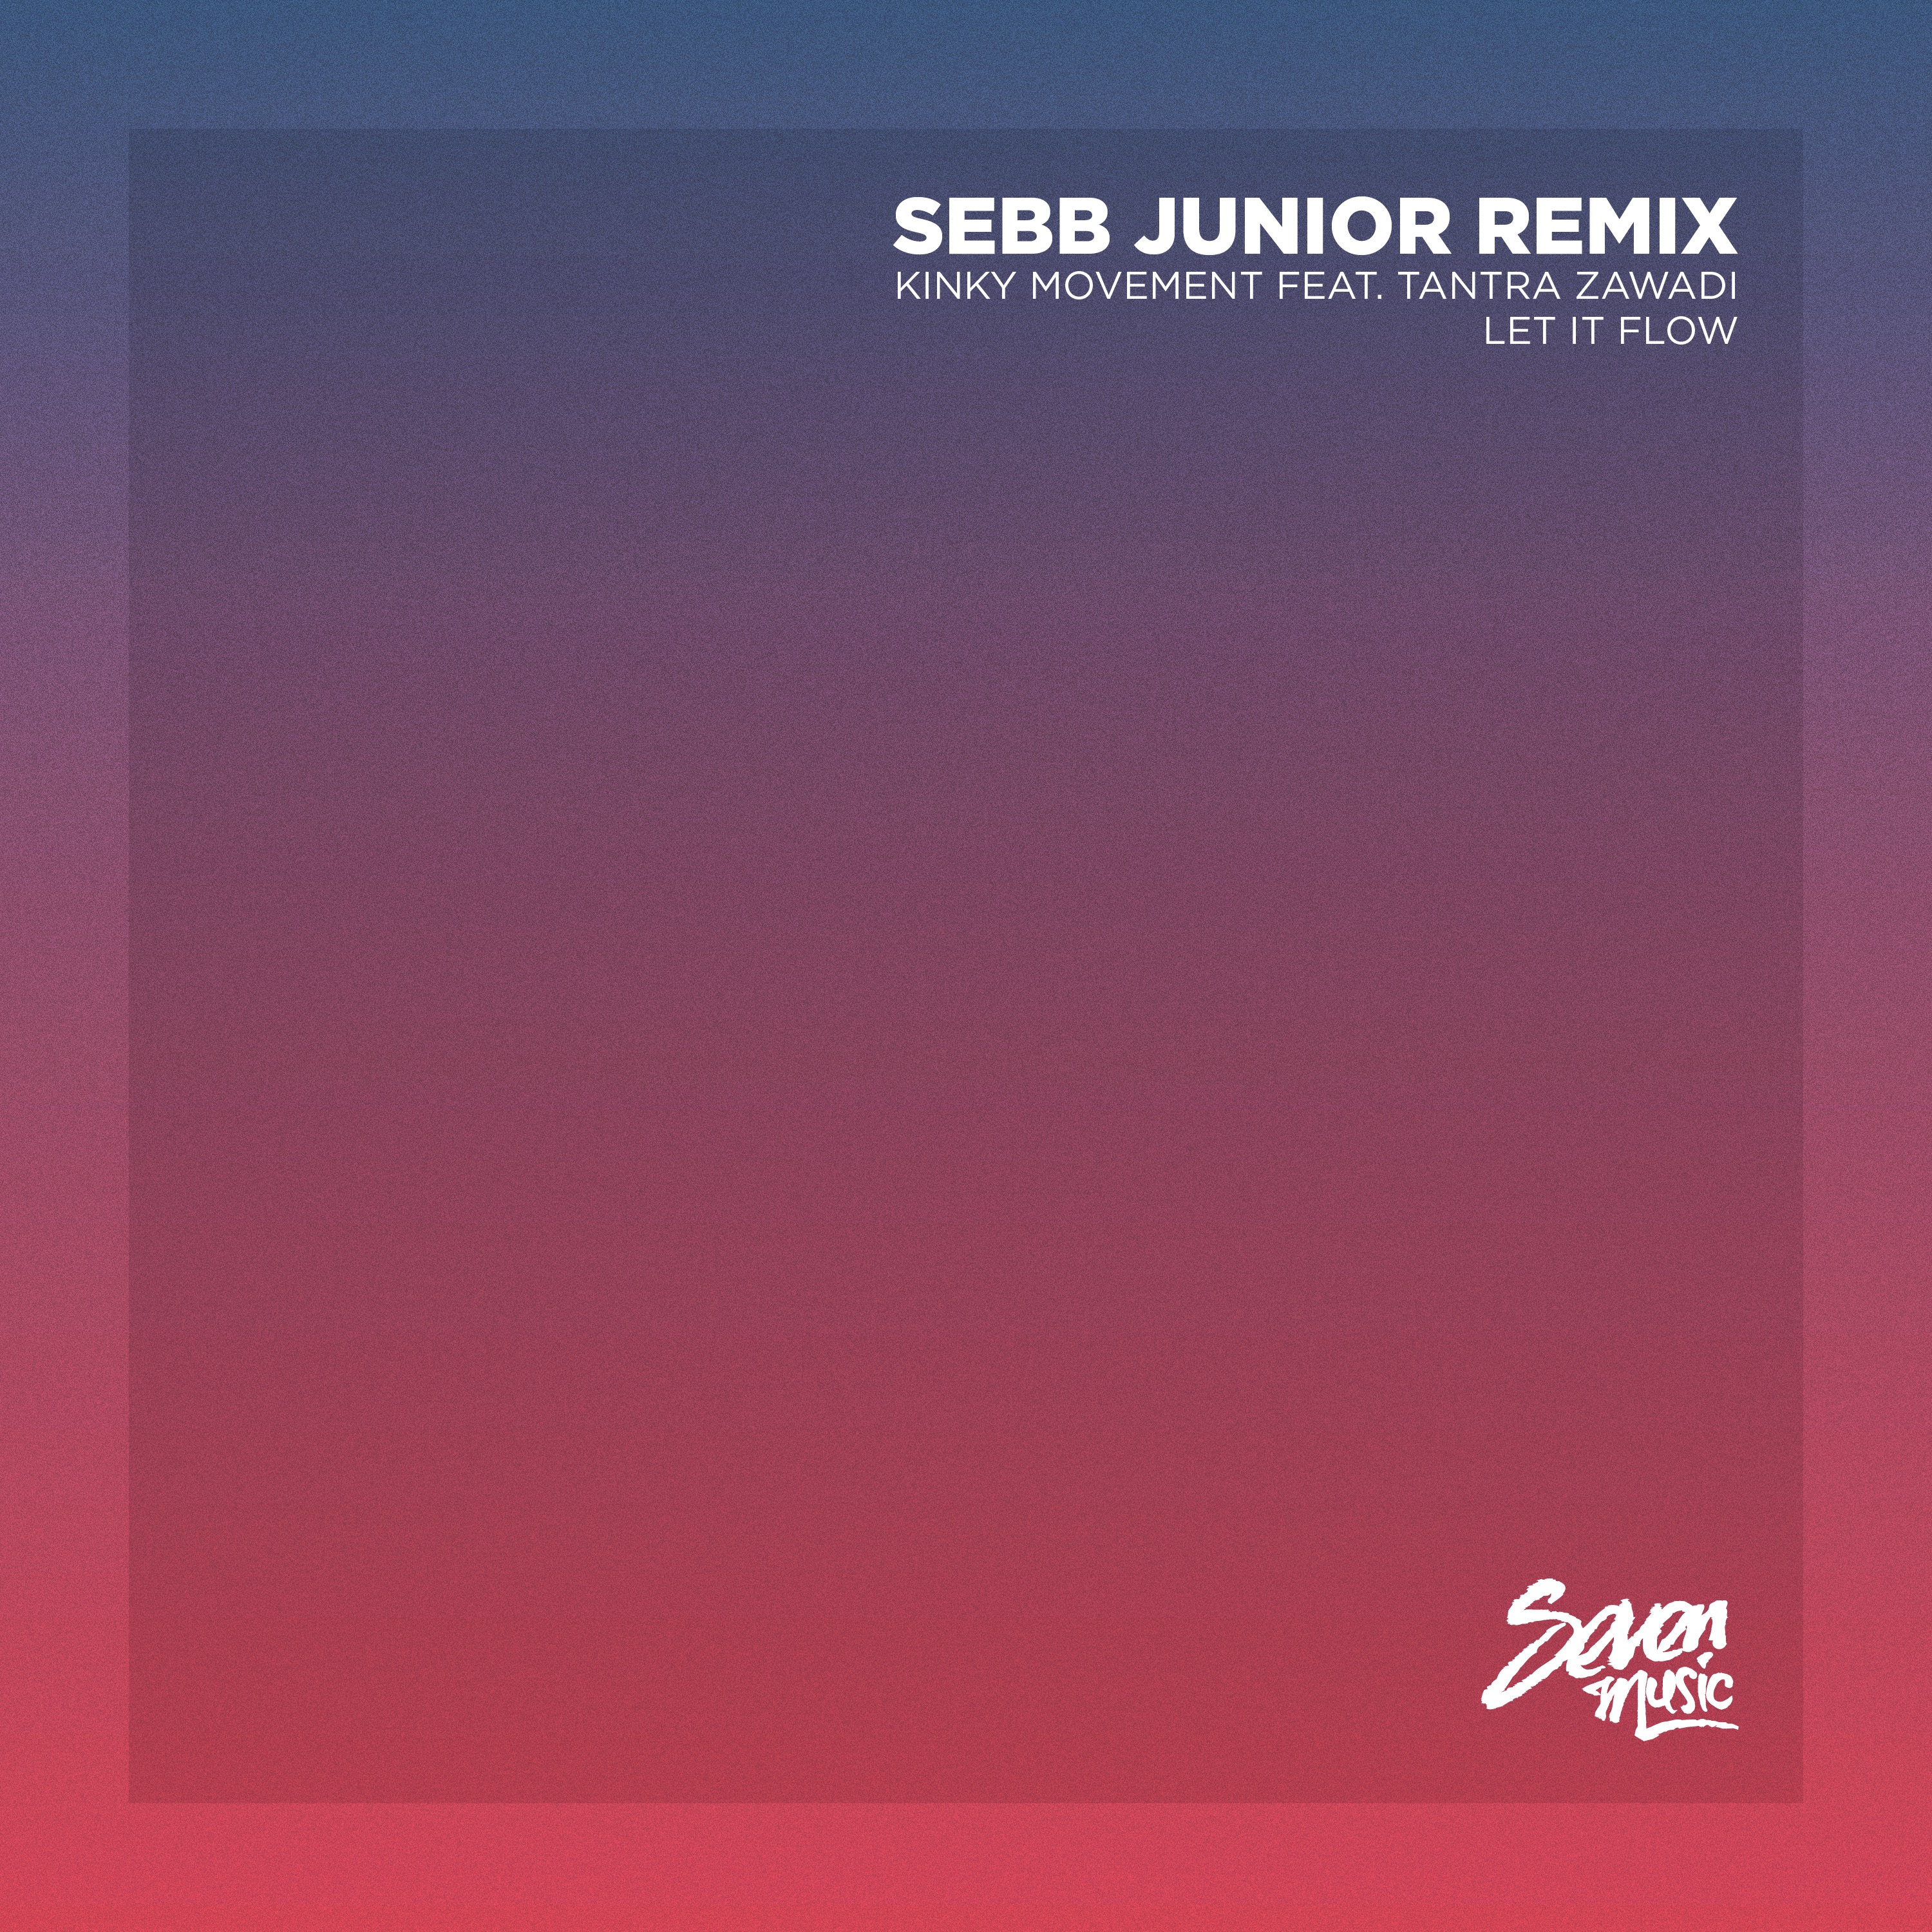 Stiahnuť ▼ Premiere: Kinky Movement - Let It Flow (Sebb Junior Remix) - Seven Music